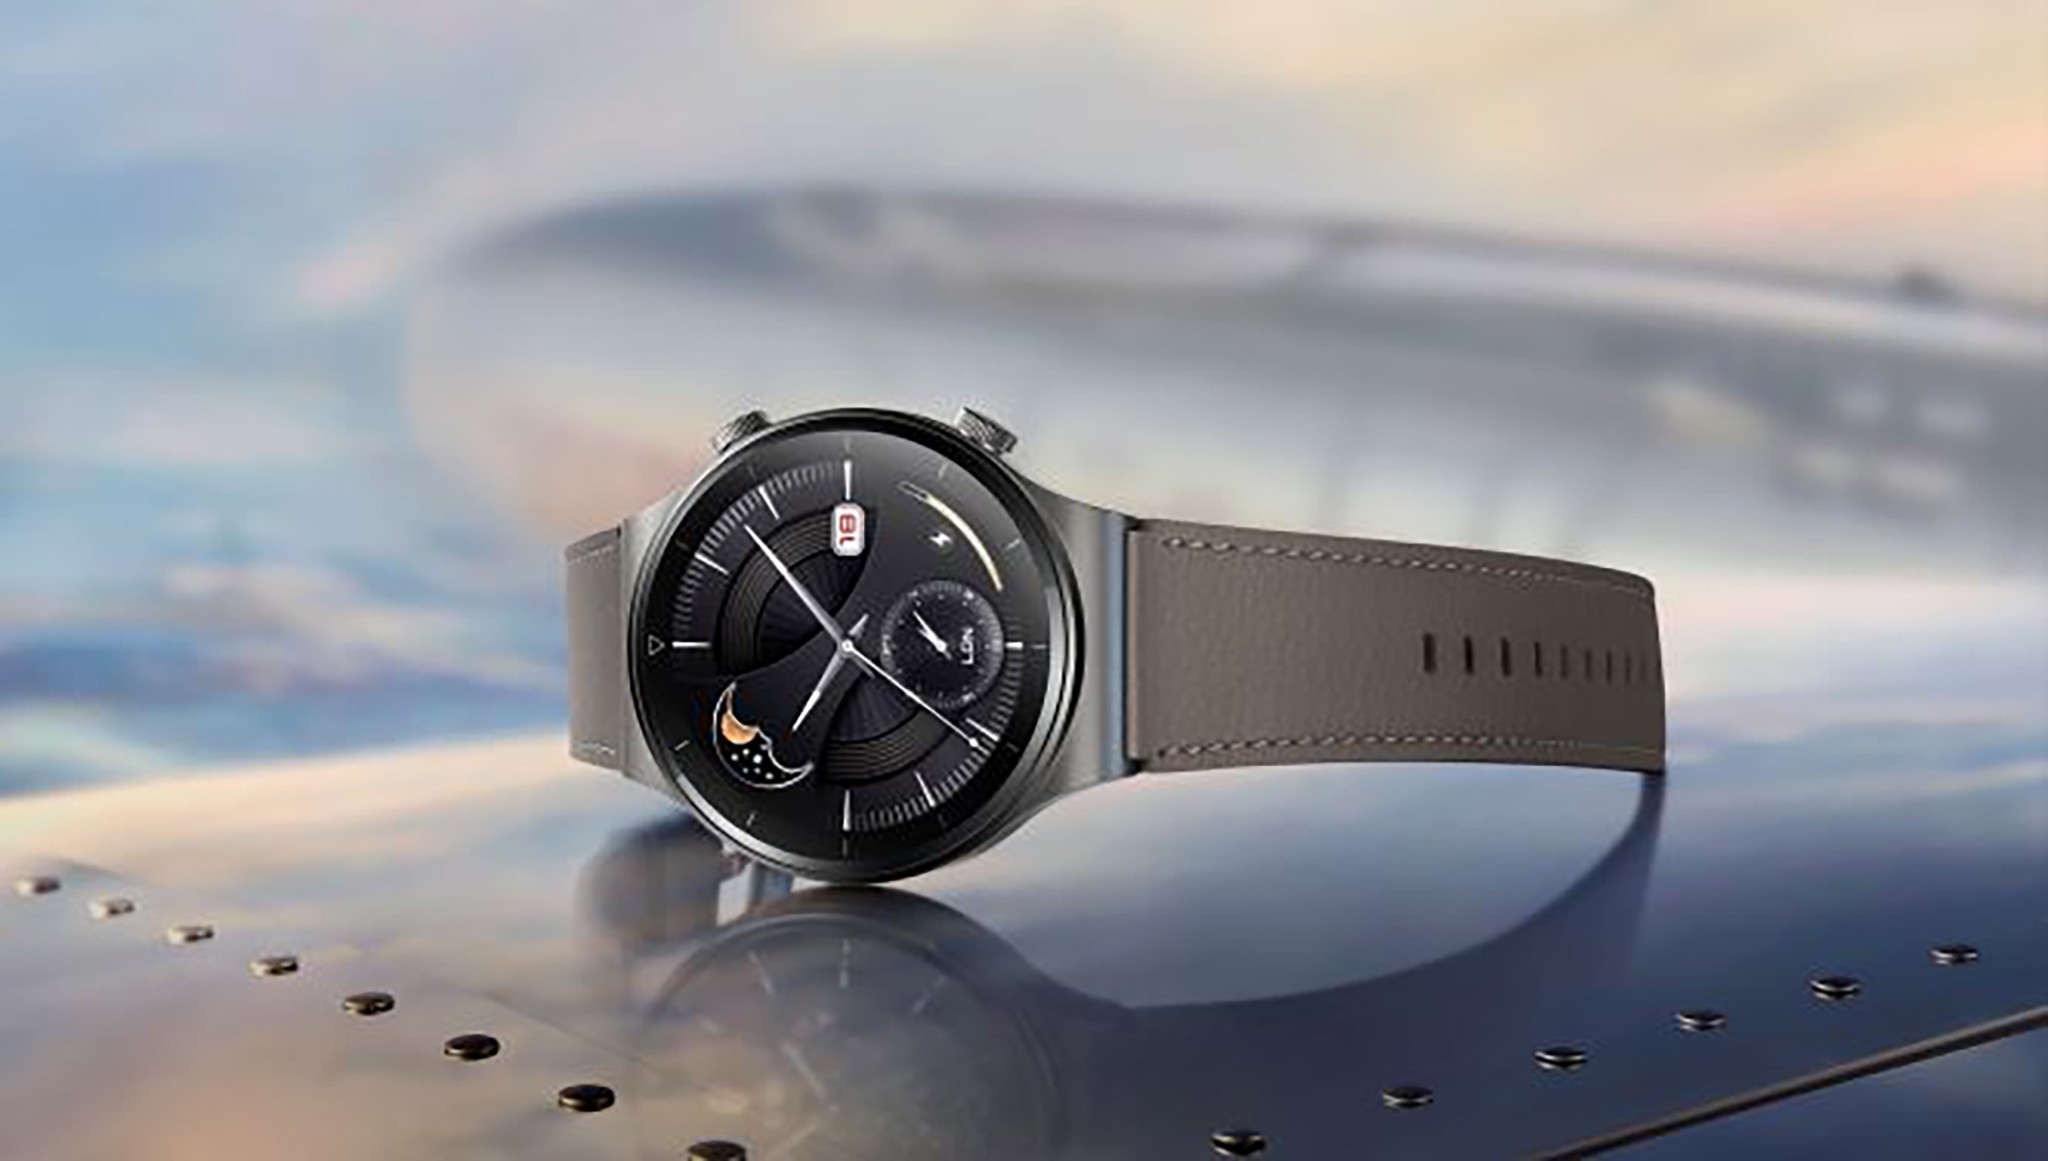 Huawei Watch GT 2 Pro ra mắt: Hoàn thiện cao cấp, nhiều chế độ luyện tập, pin 2 tuần, giá từ 8.99 triệu đồng - Ảnh 1.